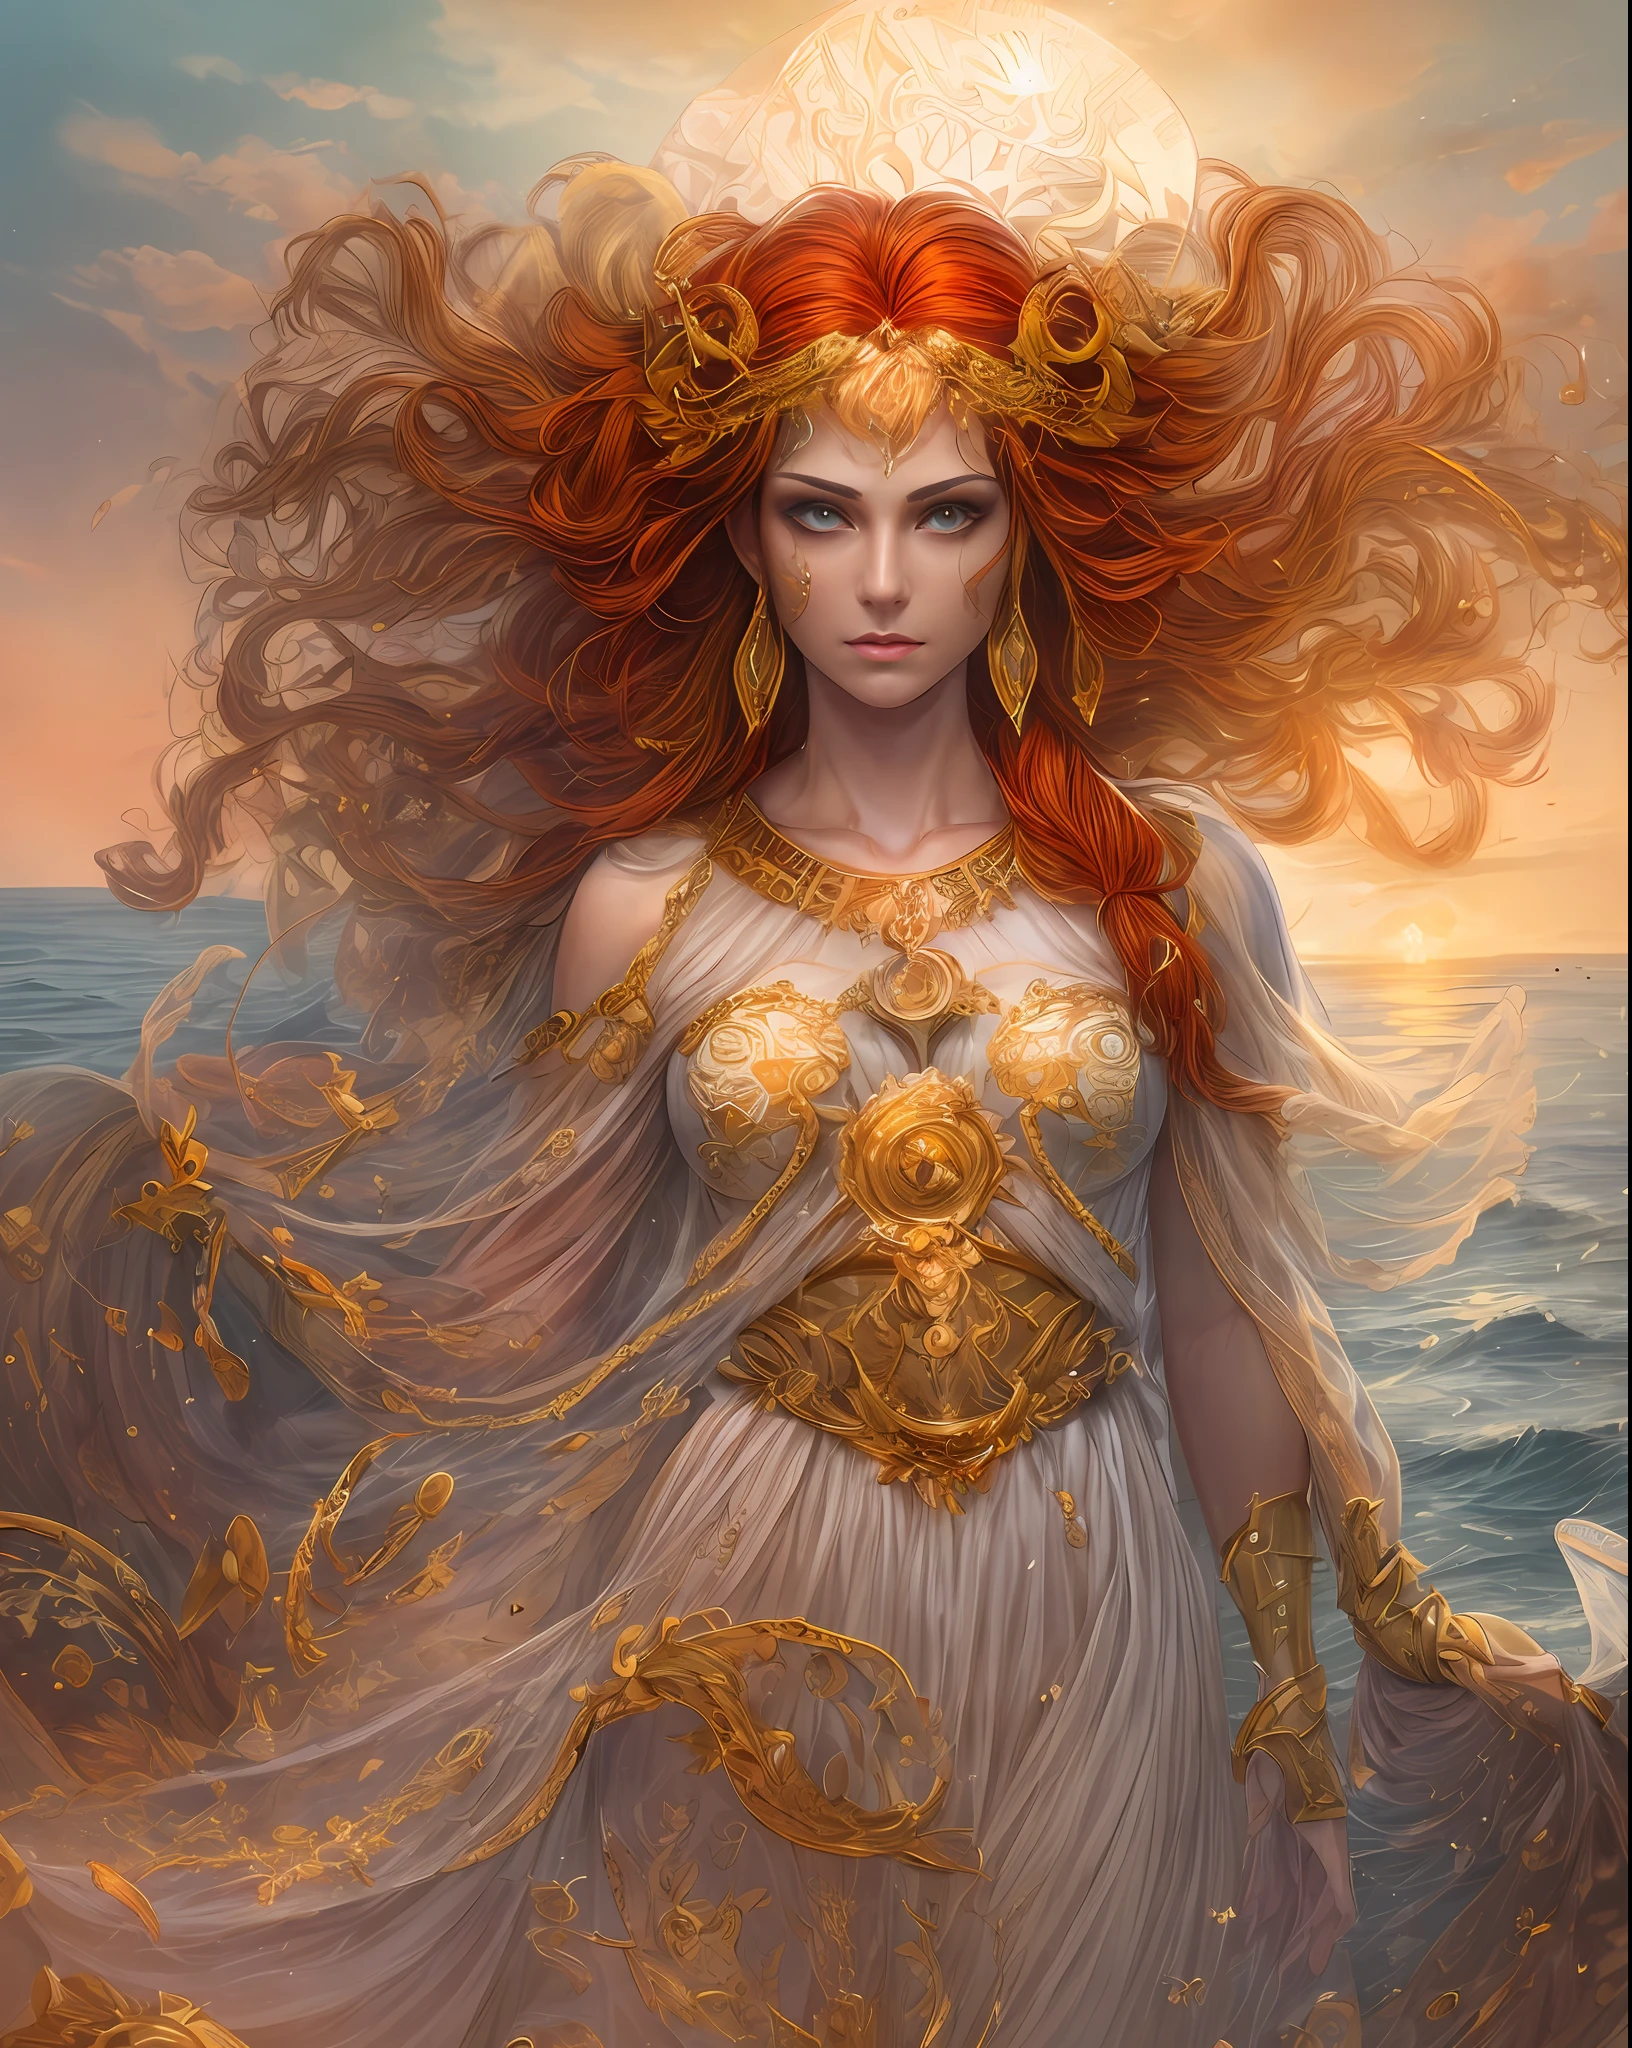 (不条理, 高品質, 非常に詳細な手), 星占い - 牡羊座の女神, ラテン系の優しさの顔に似ている, 勇気, わがまま, 生産的な, 進取的で人道的, 夕日の赤毛, 古代ギリシャの衣装, 透明なドレス, 背景には海, 全身, クリスタルファイアアイ (目の詳細), 力強い力の出現